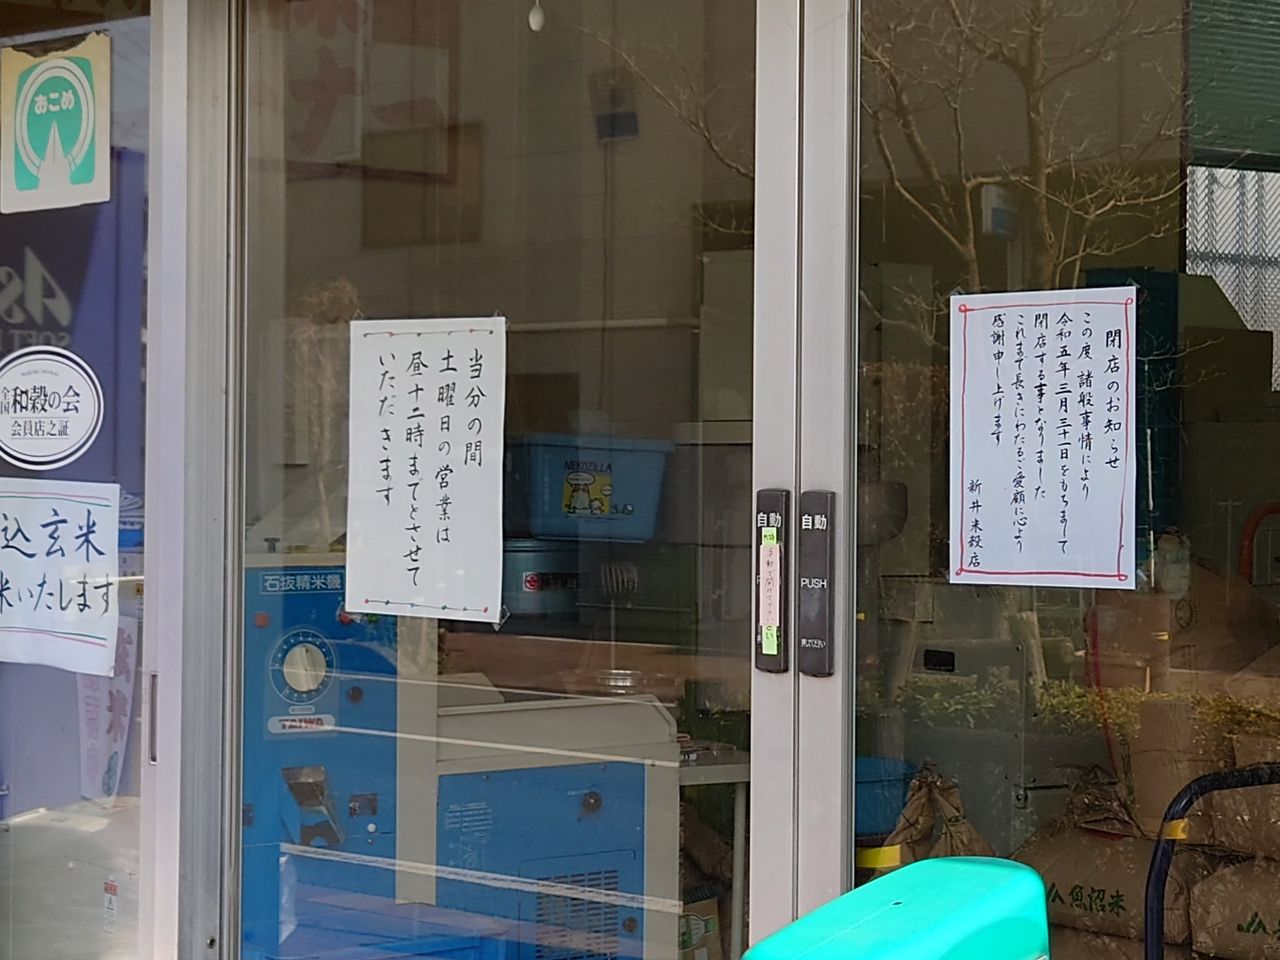 新井米穀店3月31日閉店のお知らせ